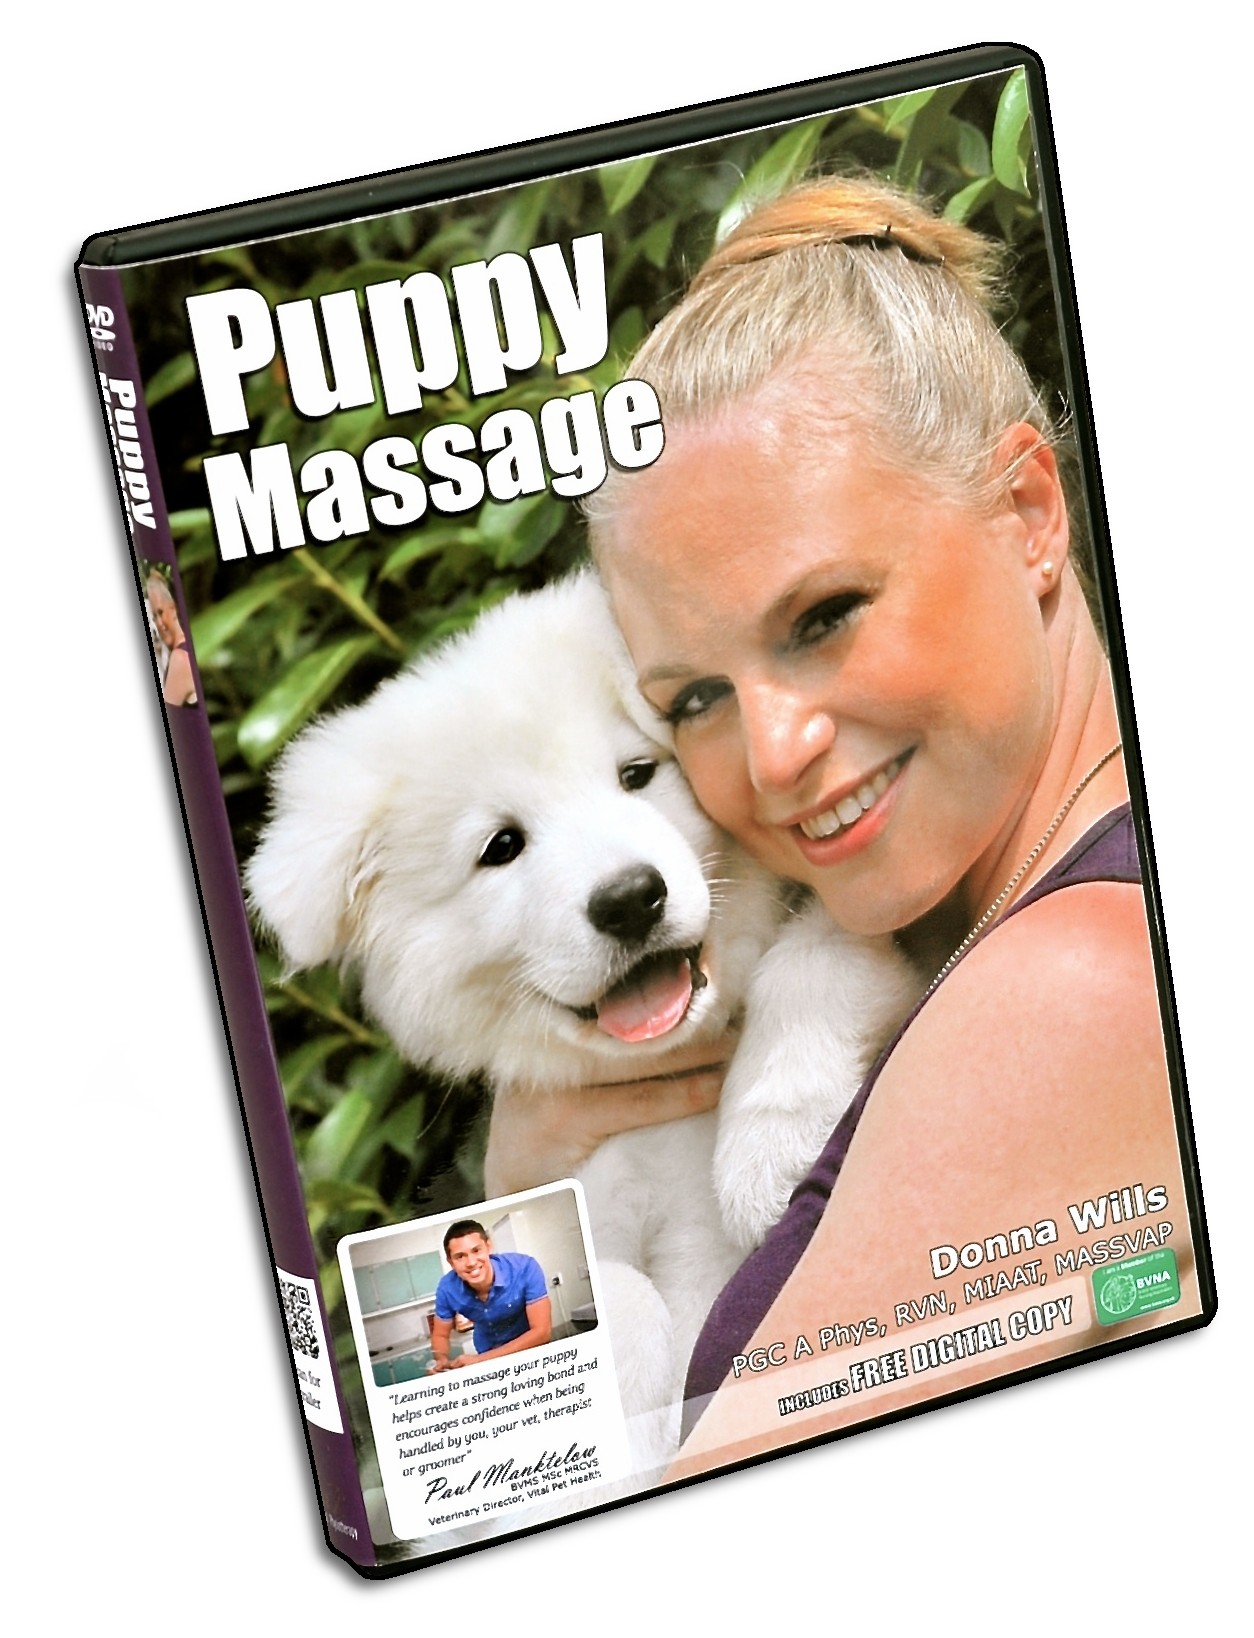 Puppy Massage DVD - 1 year